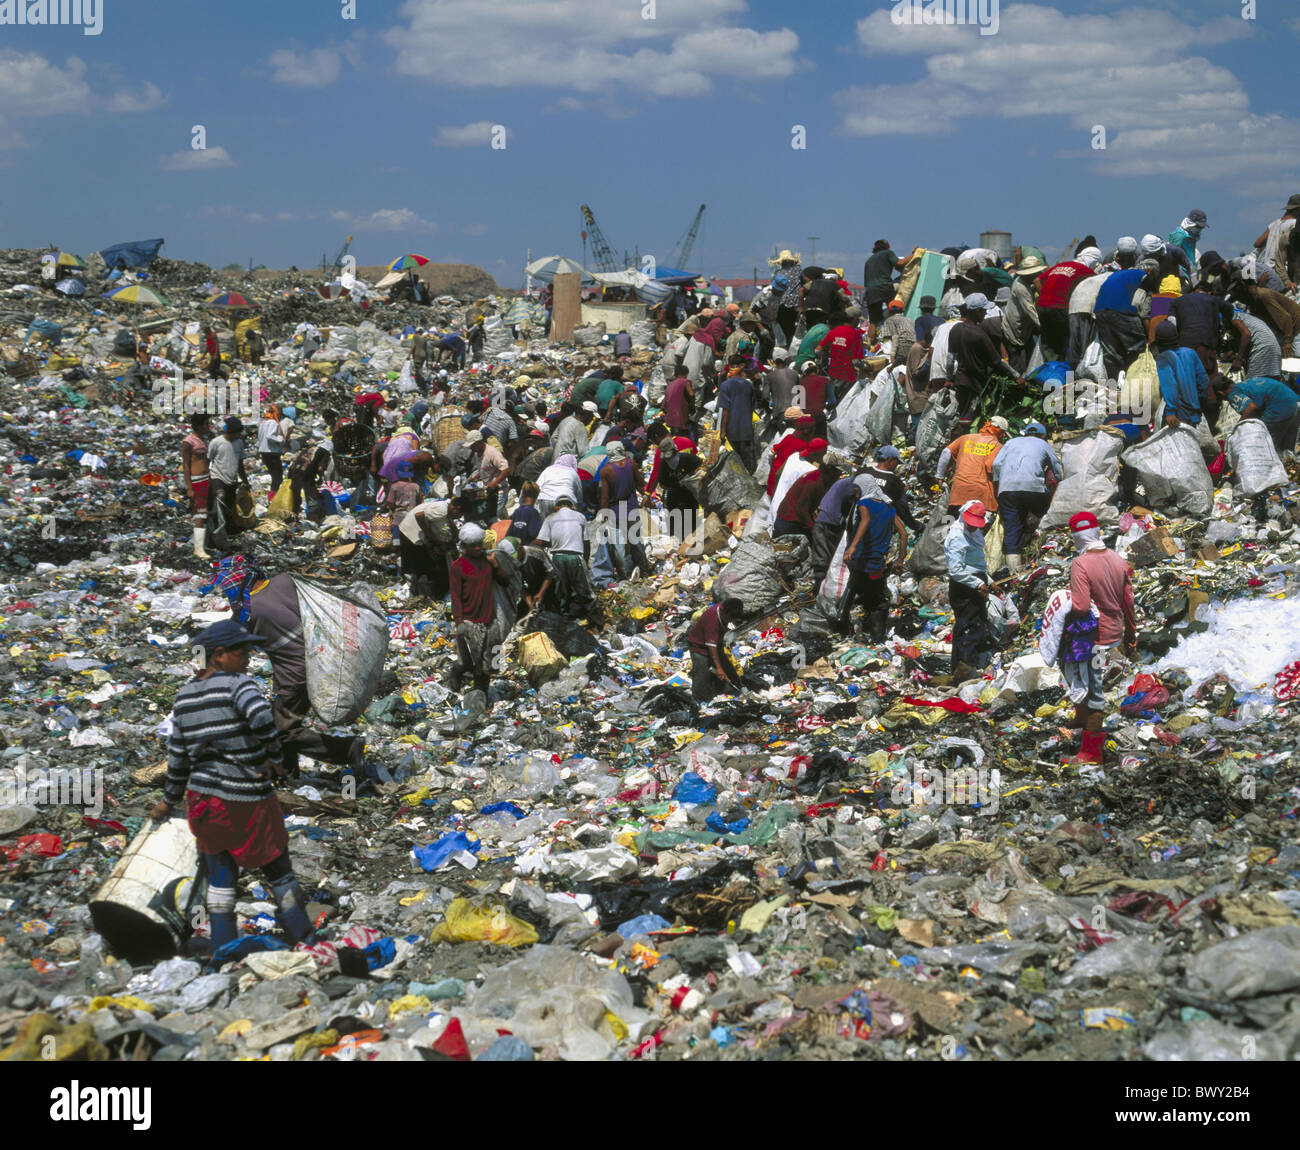 waste mountain poverty Third World misery squalor hunger Manila person Philippines Asia Smokie Mountain s Stock Photo